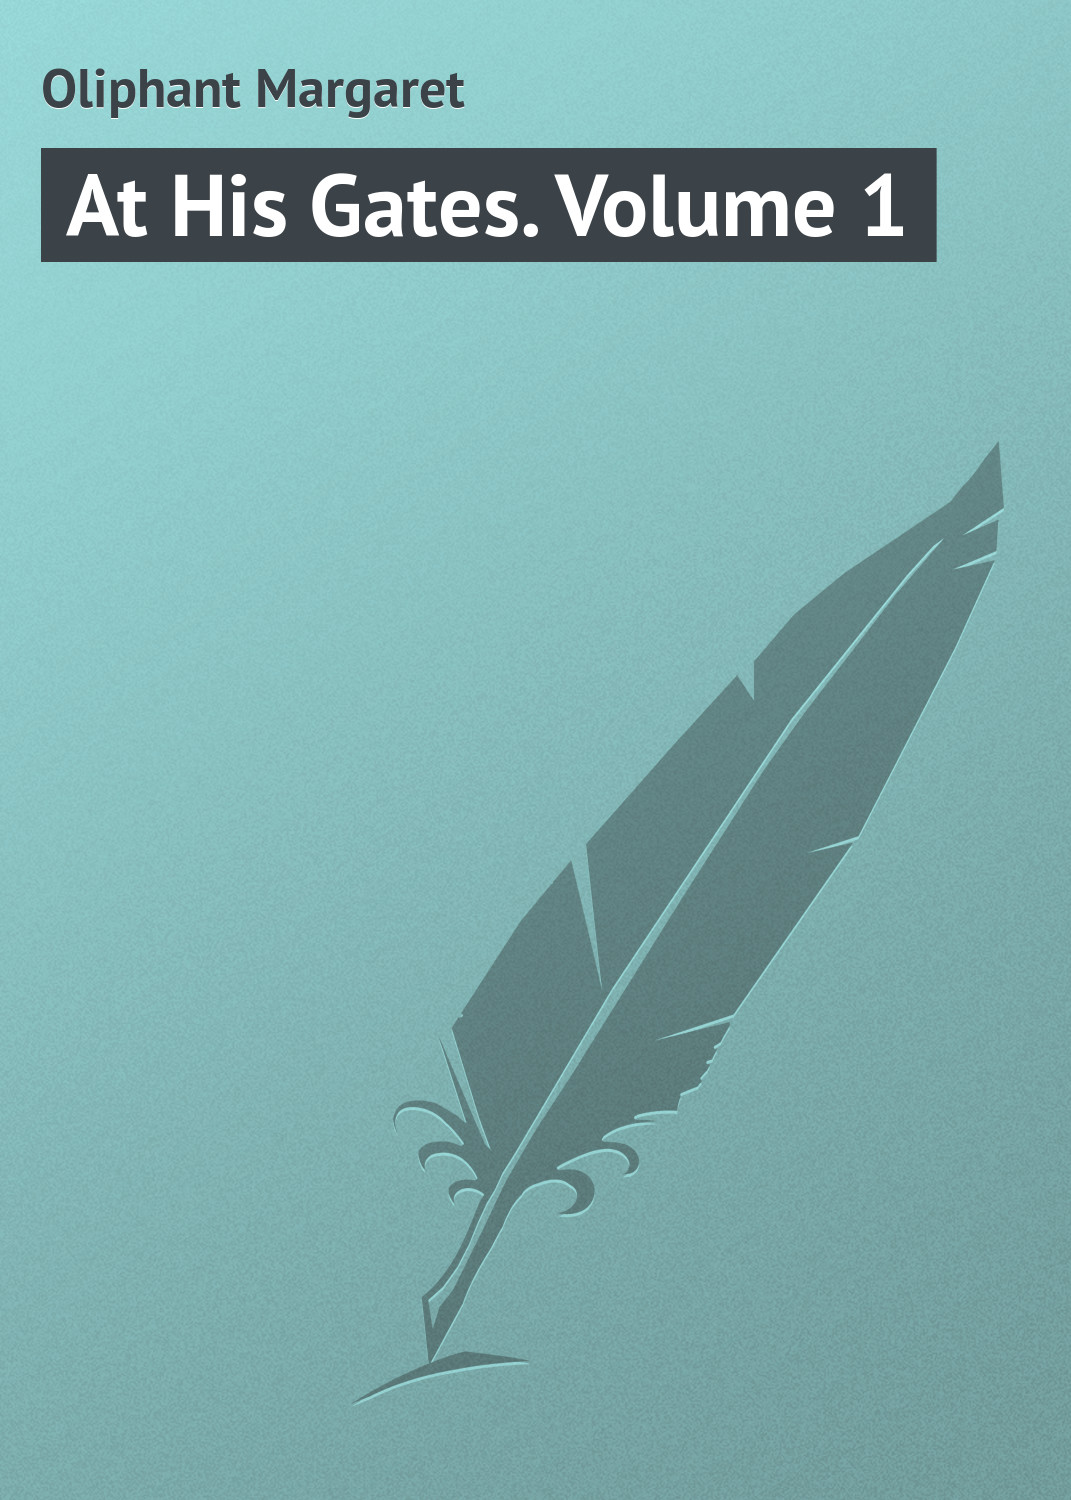 Книга At His Gates. Volume 1 из серии , созданная Margaret Oliphant, может относится к жанру Зарубежная классика. Стоимость электронной книги At His Gates. Volume 1 с идентификатором 23164707 составляет 5.99 руб.